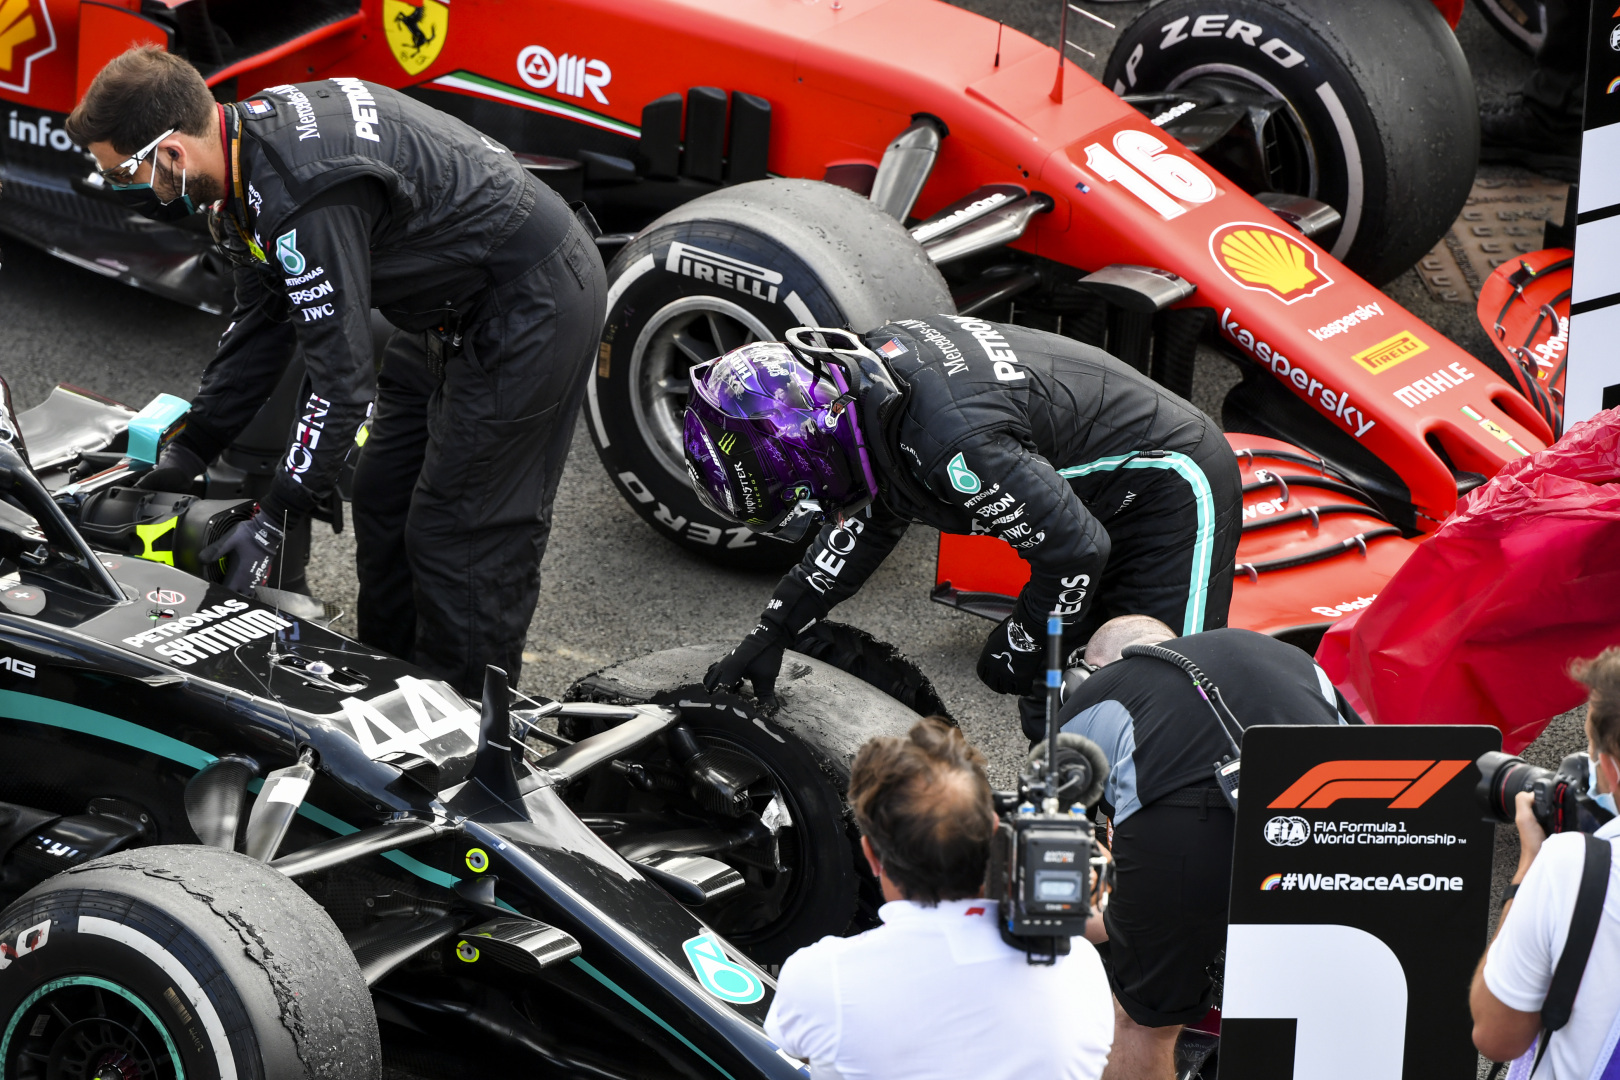 2020 British Grand Prix, Sunday - Lewis Hamilton (image courtesy Mercedes-AMG Petronas)